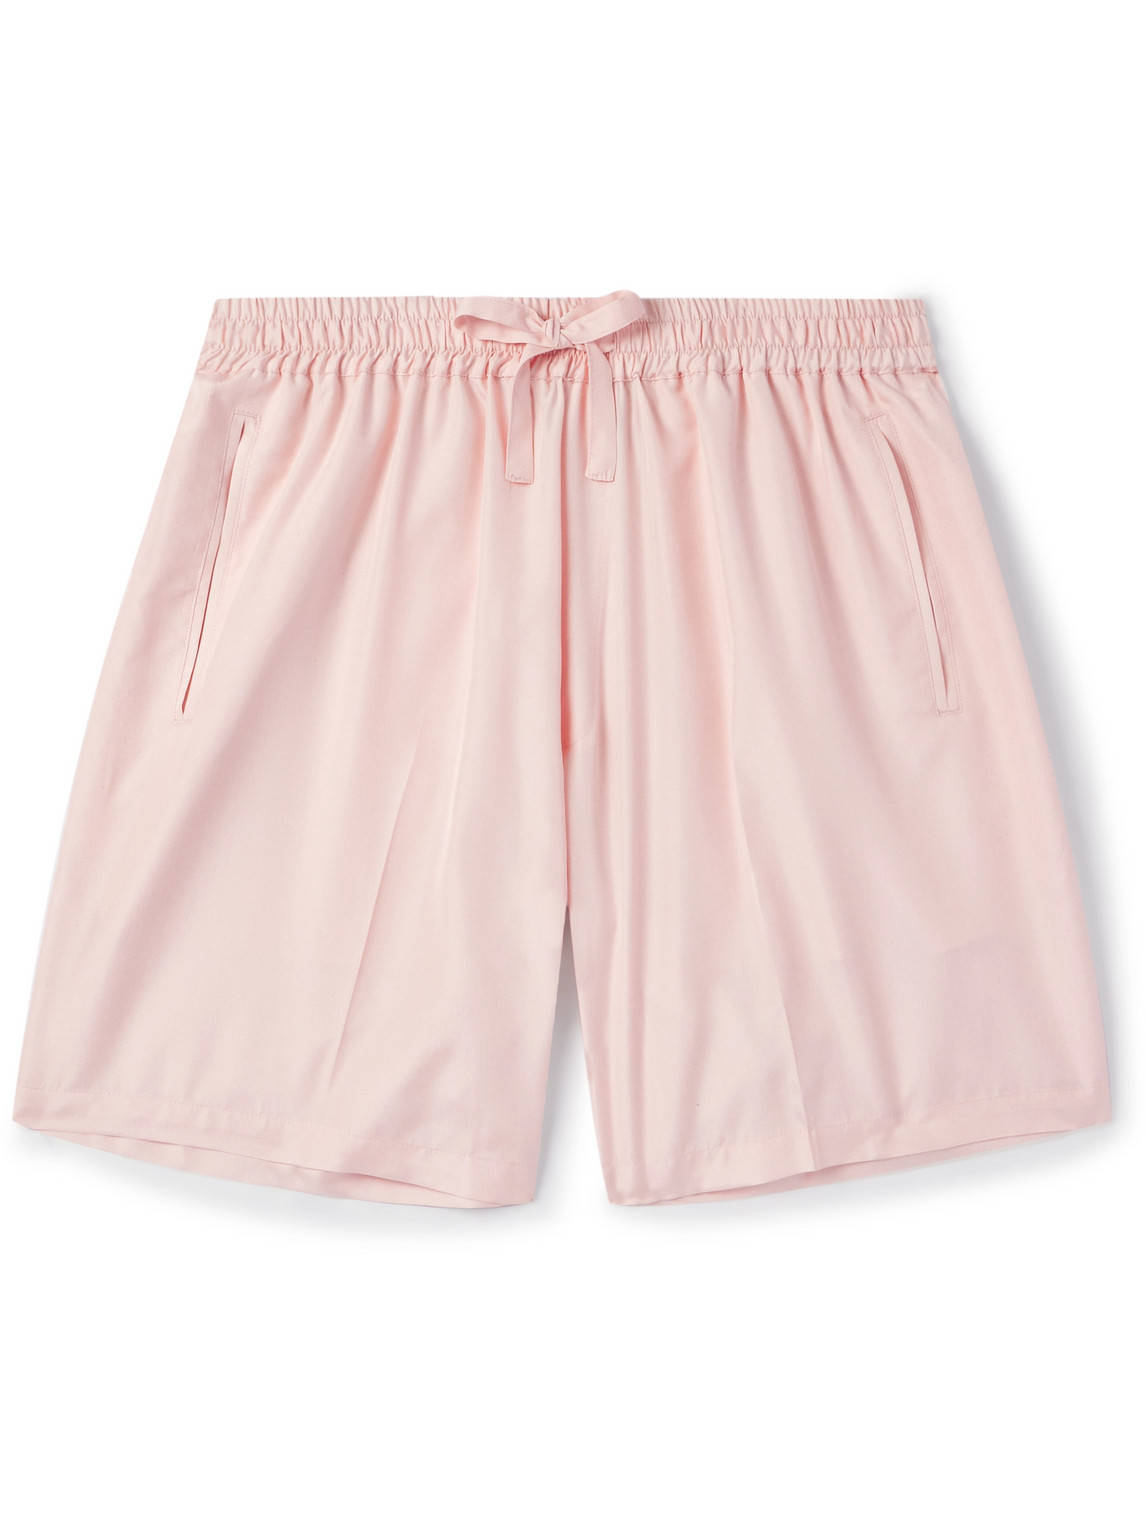 Umit Benan B+ Julian Straight-leg Silk-satin Drawstring Shorts In Pink